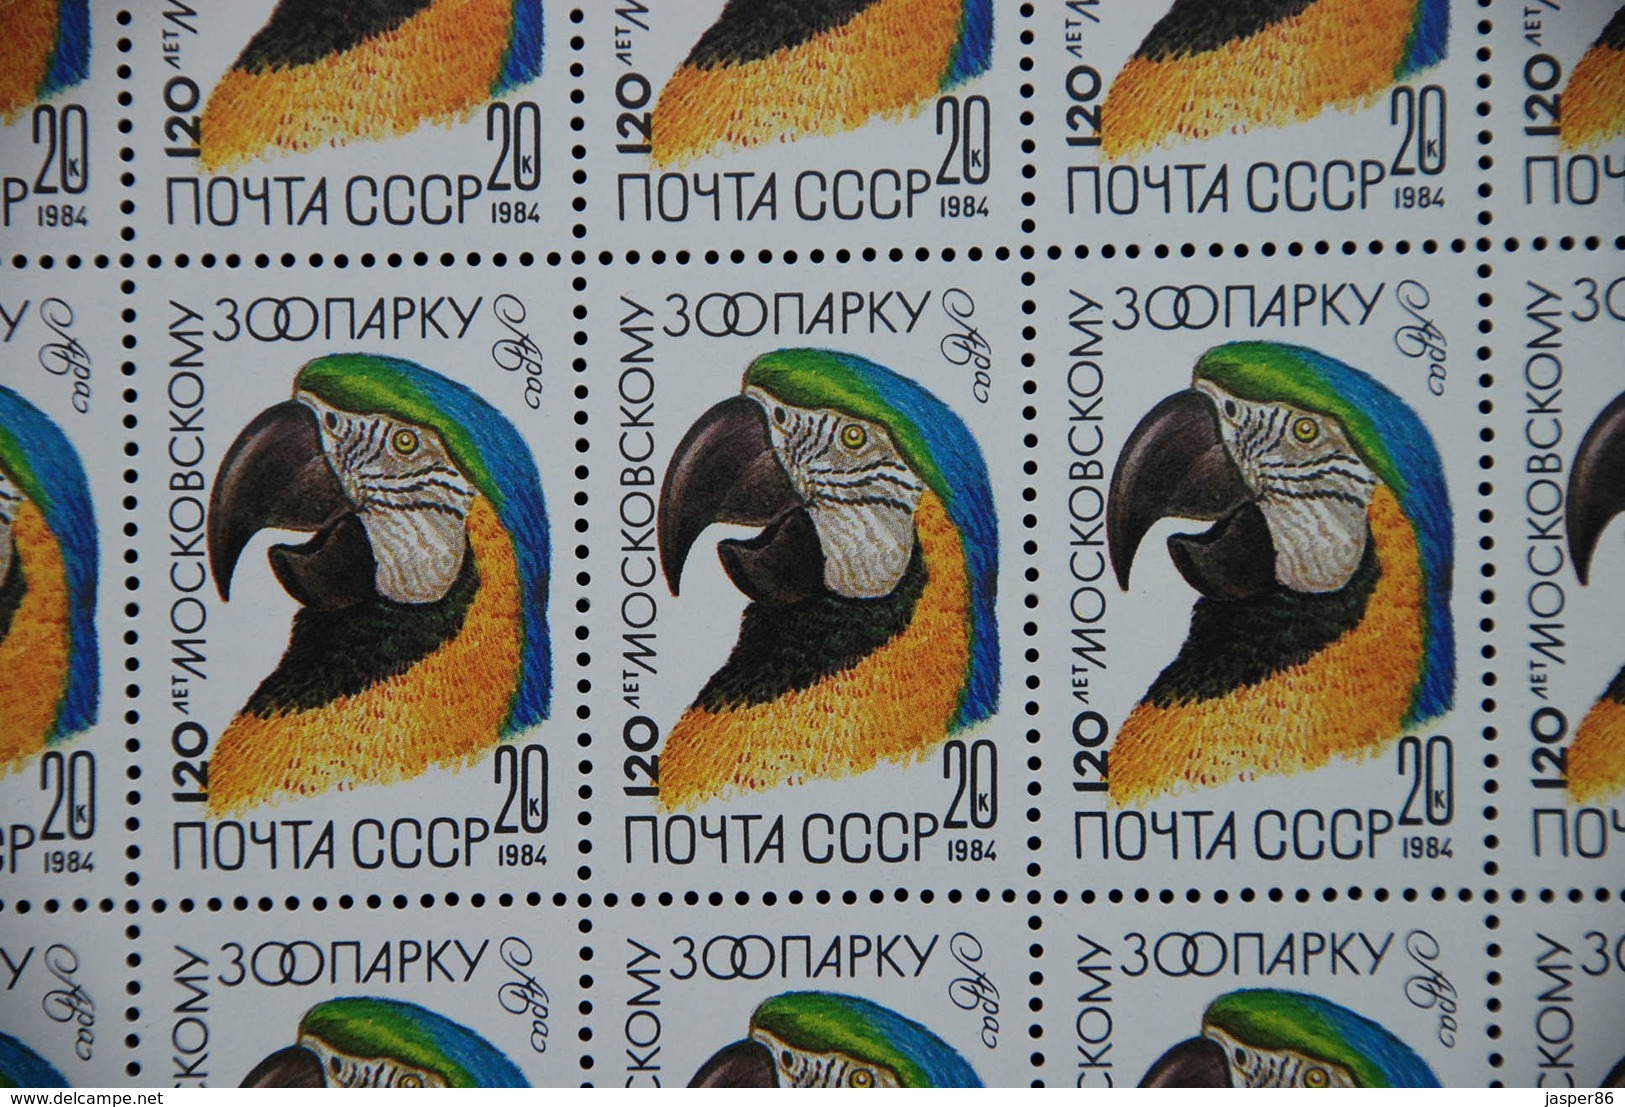 RUSSIA 1984 MNH Sc 5226-30, Mi 5356-60 Macaw, Crane, Leopard Sheets CV46.80 EU - Fogli Completi